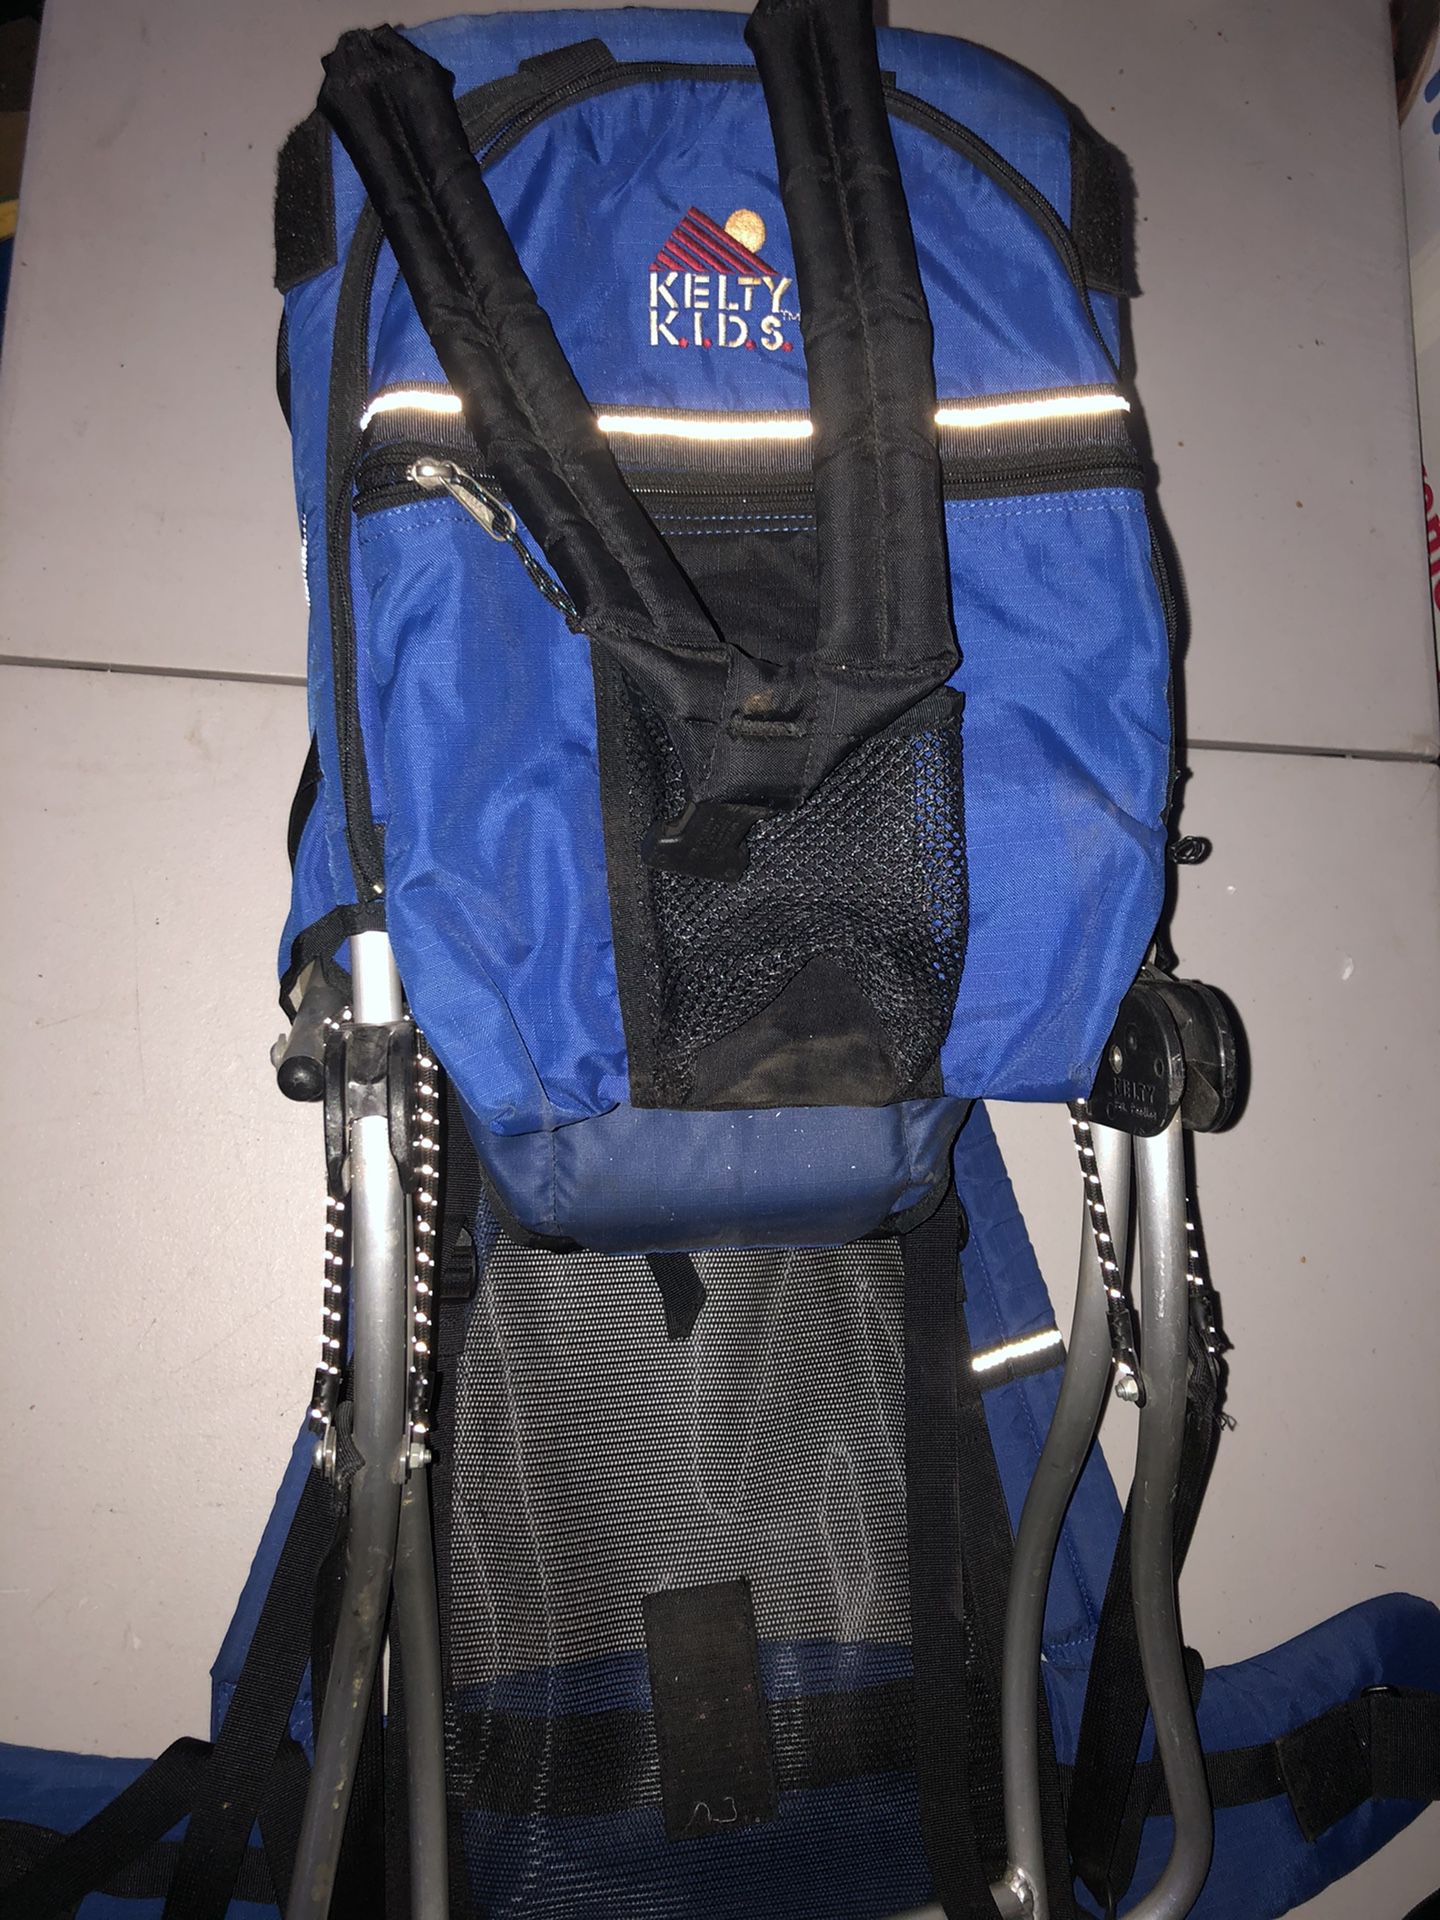 Kelty Kids Trek Blue Backpack Carrier for baby/kids